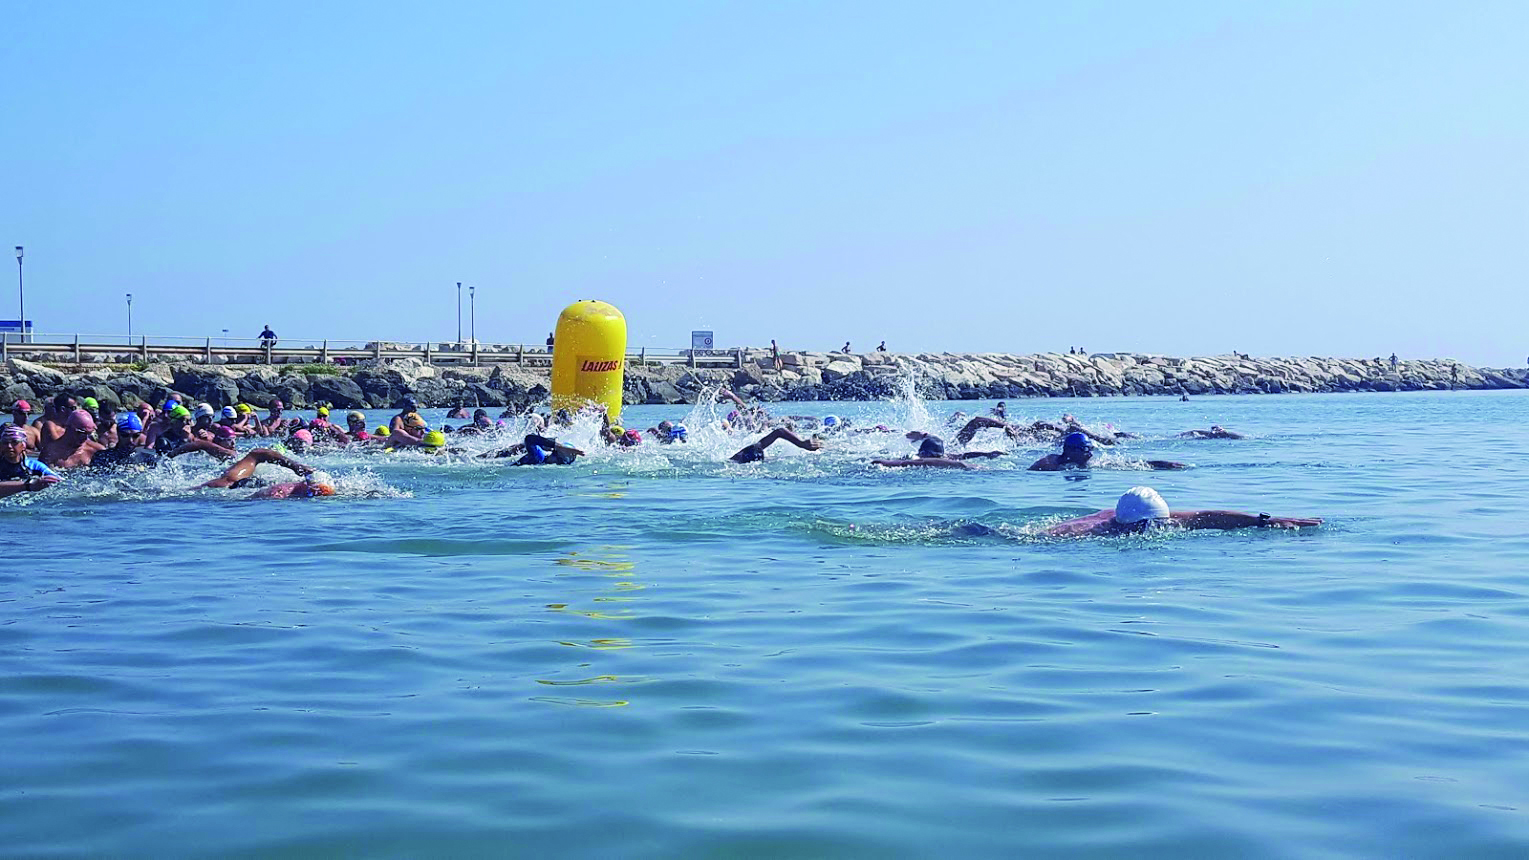 Nuotata non competitiva nella costa dei trabocchi e Premio D’Abruzzo per l’ambiente ad Alfonso Pecoraro Scanio 